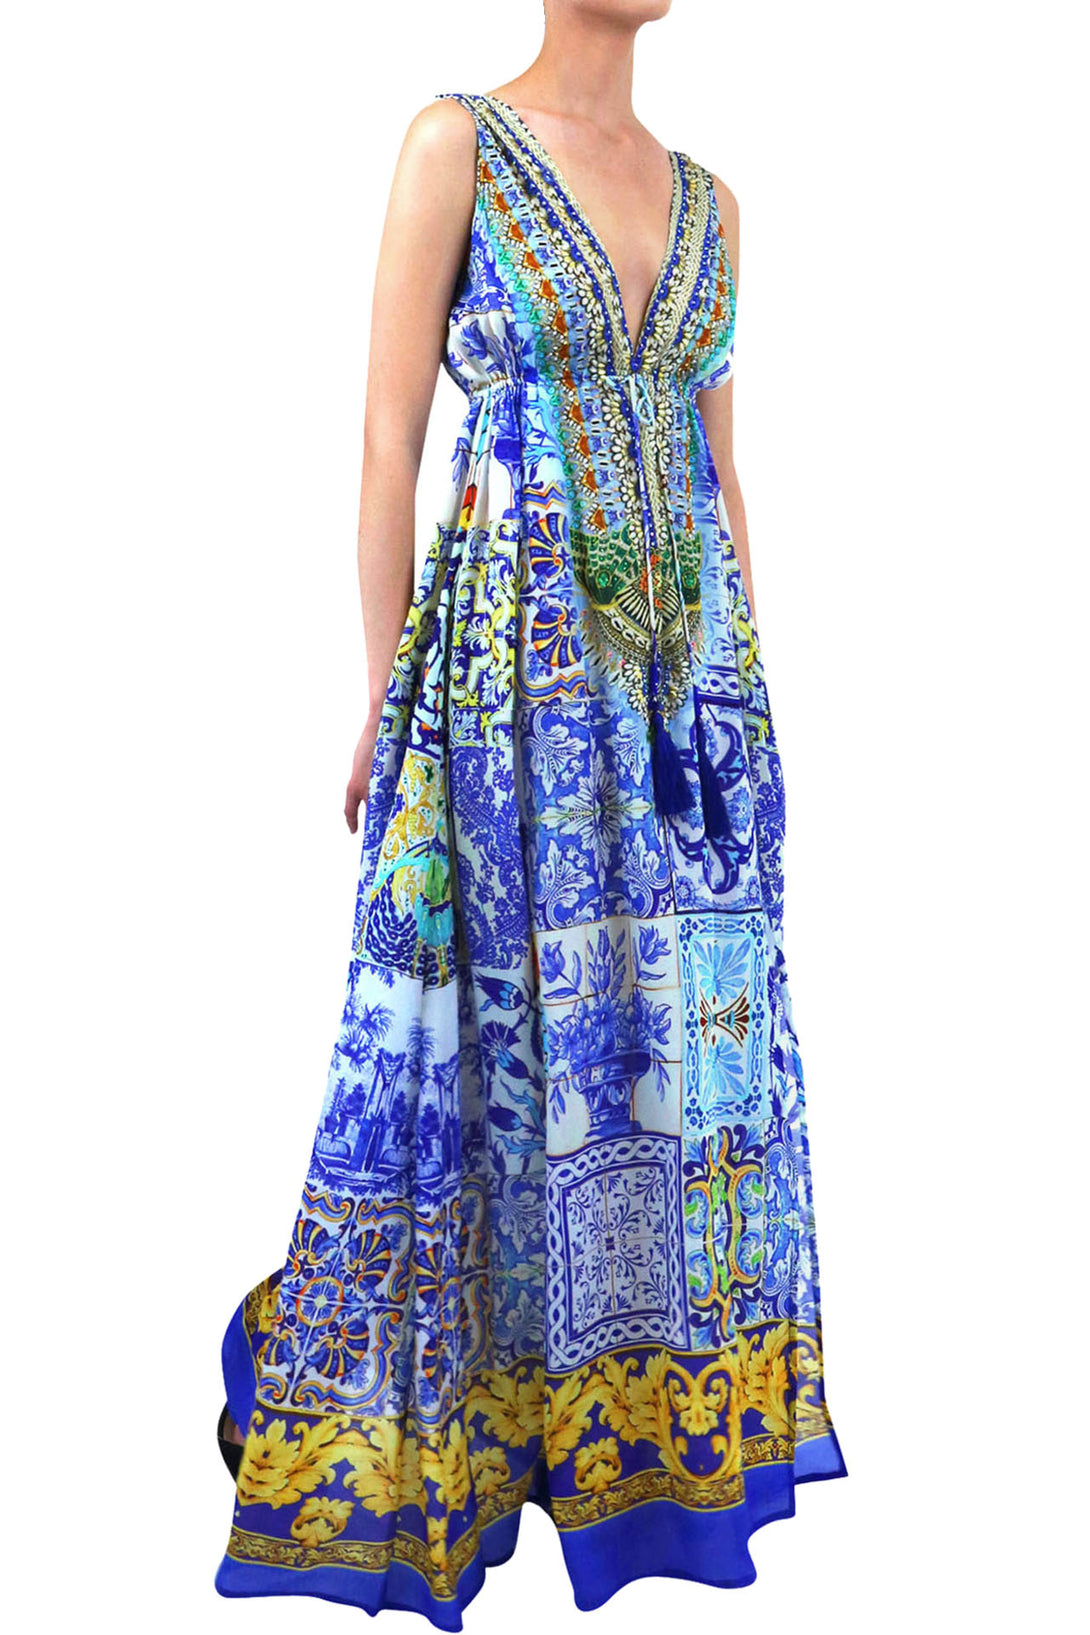  blue long dress formal, summer maxi dresses for women, plunging v neck formal dress,